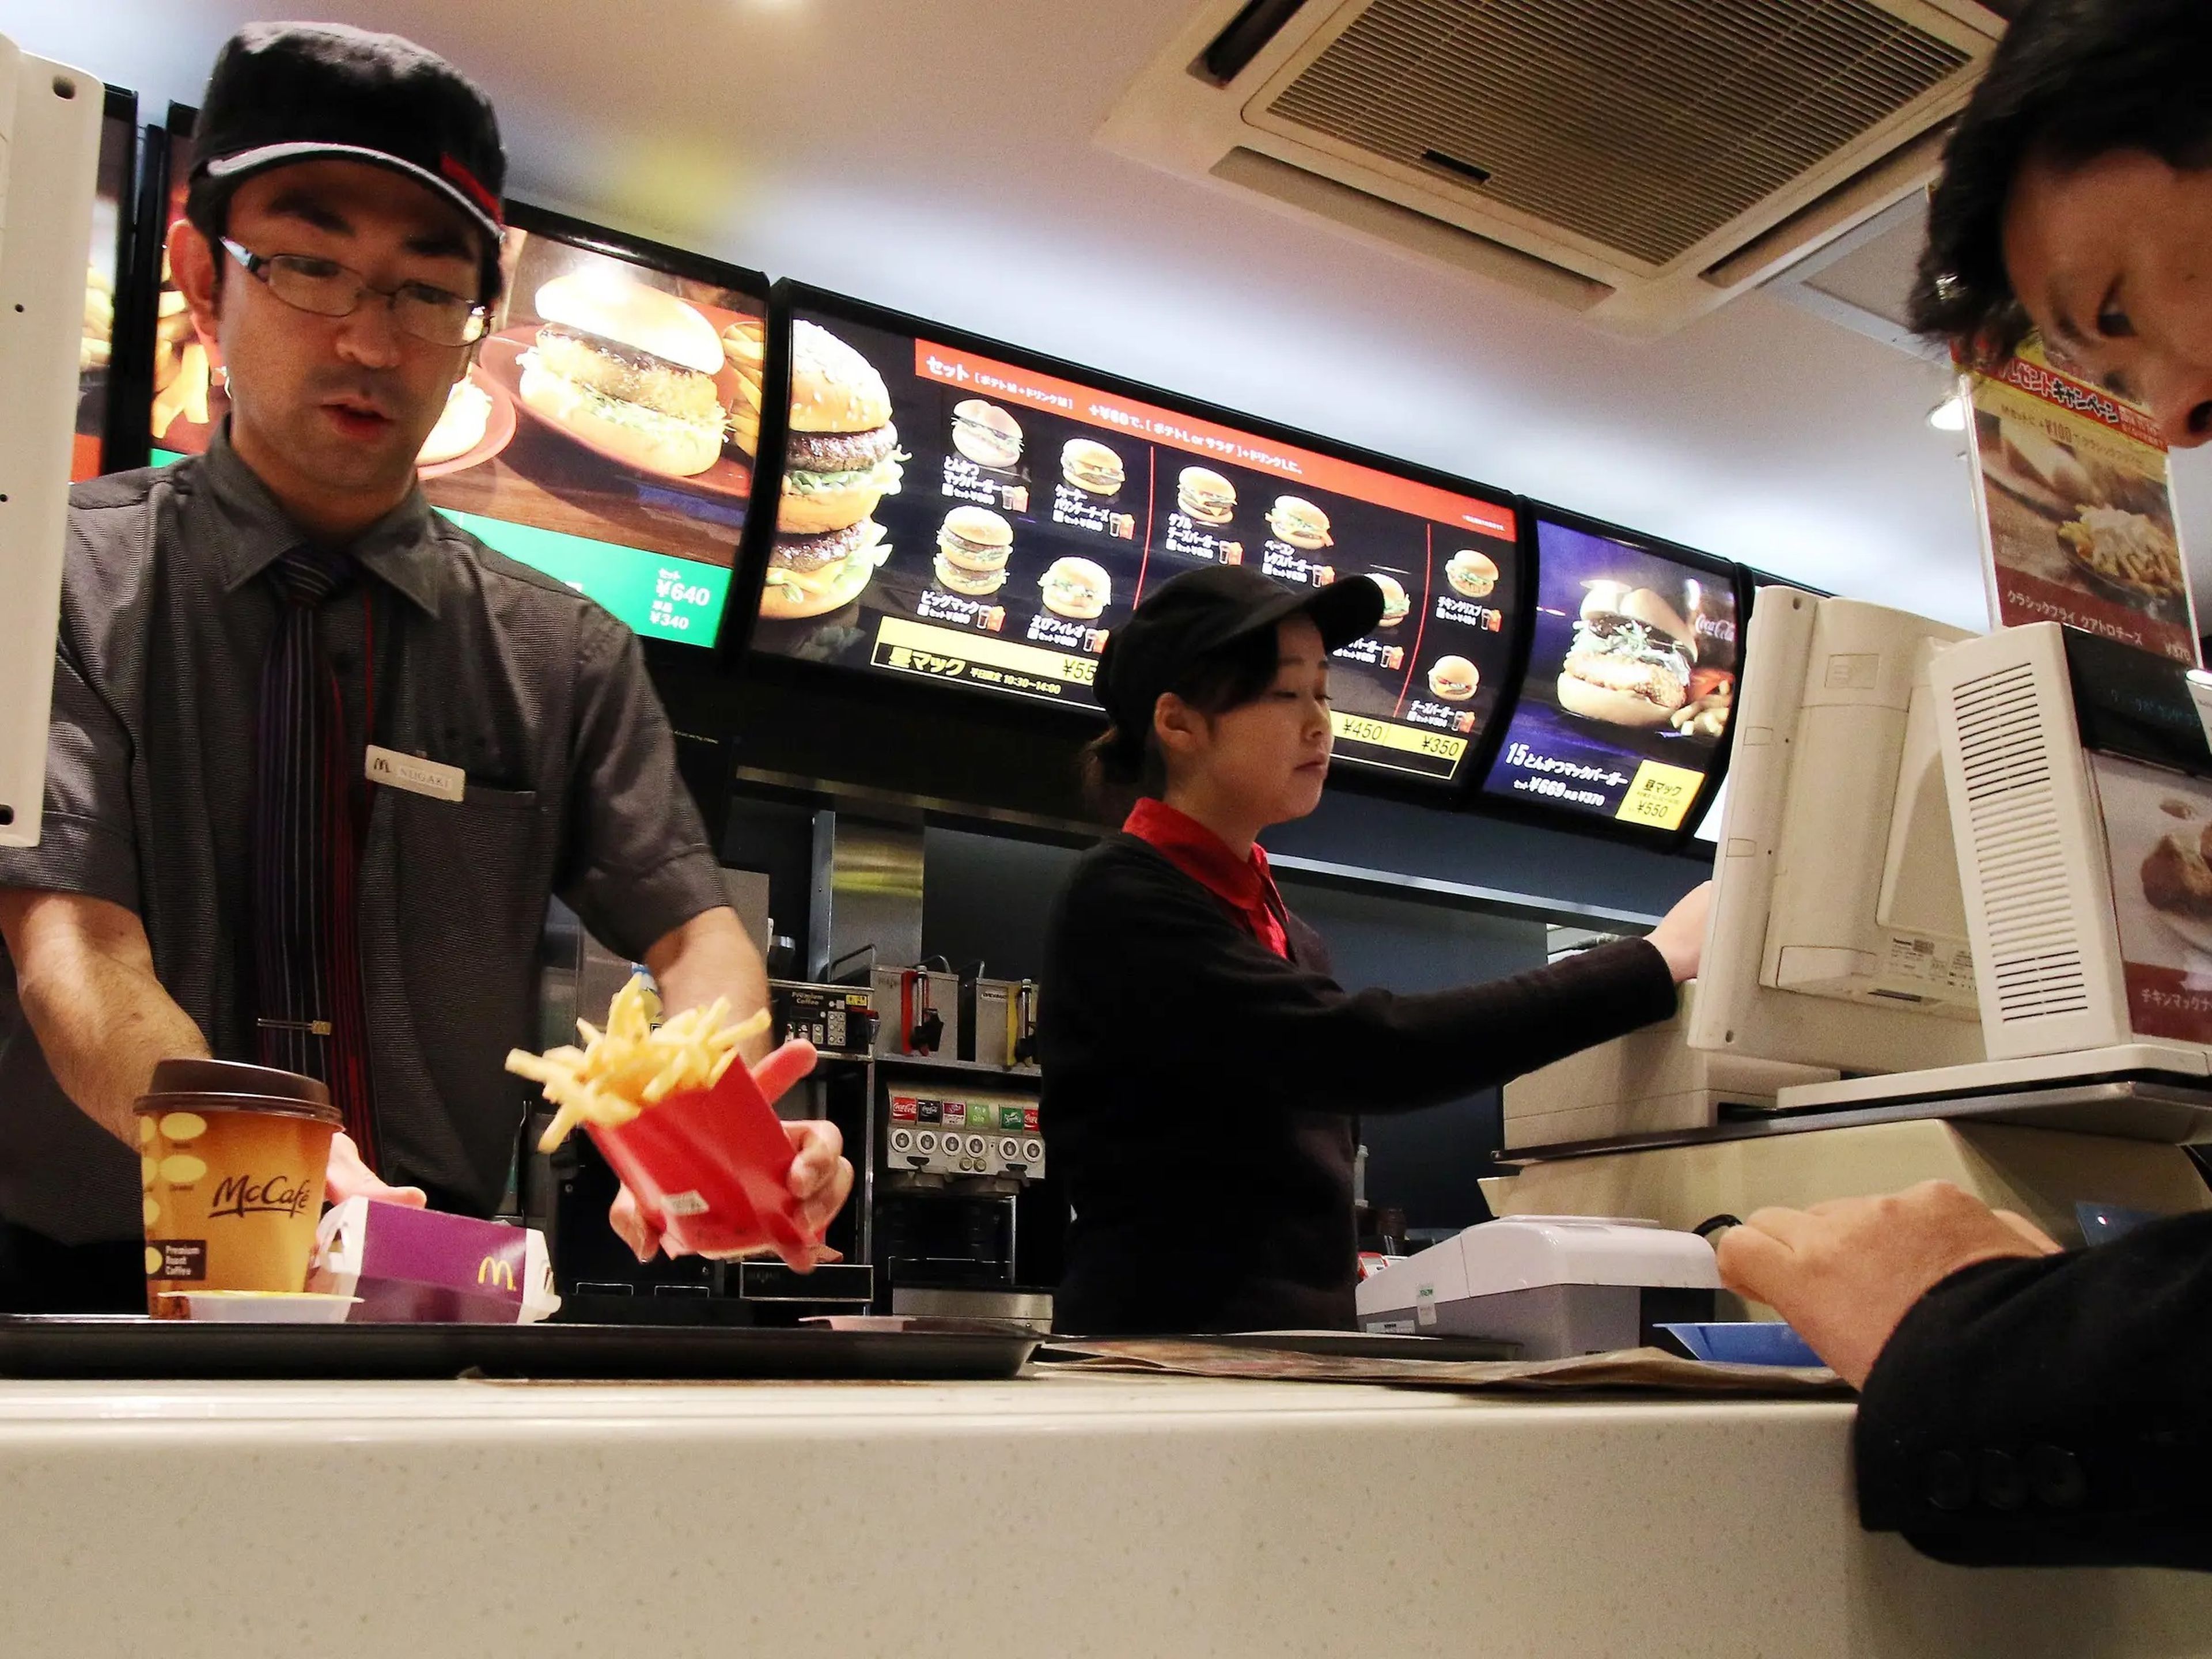 McDonald's Japón solo permitirá a los clientes comprar el tamaño más pequeño de sus patatas durante una semana desde el 24 de diciembre.